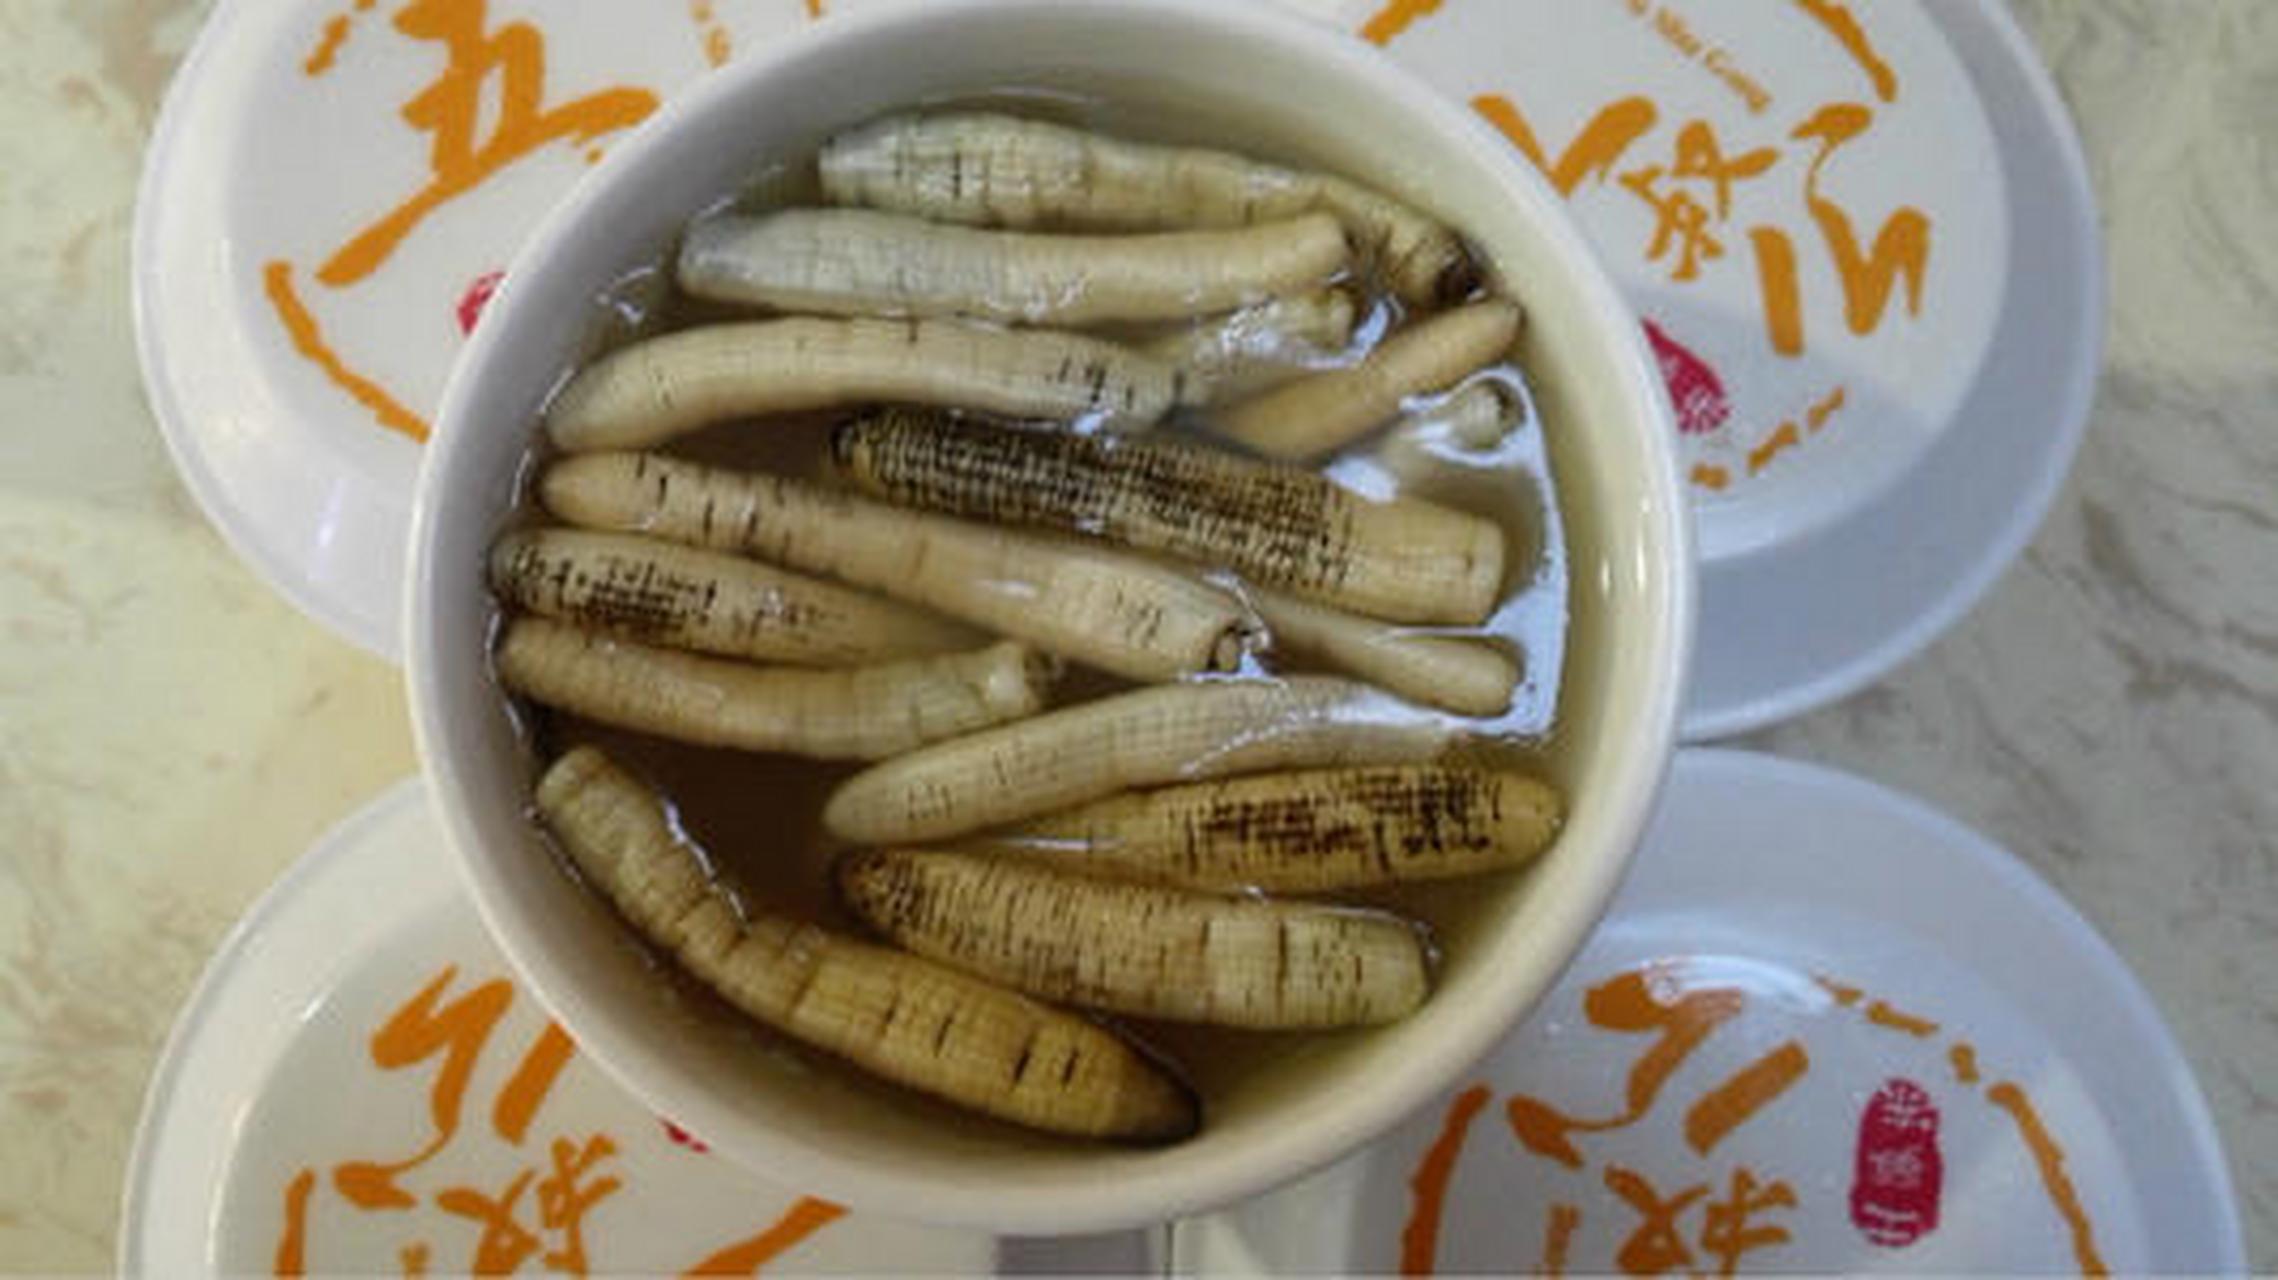 土笋冻,是发源于福建泉州的特色食品,是一种由特有产品加工而成的冻品